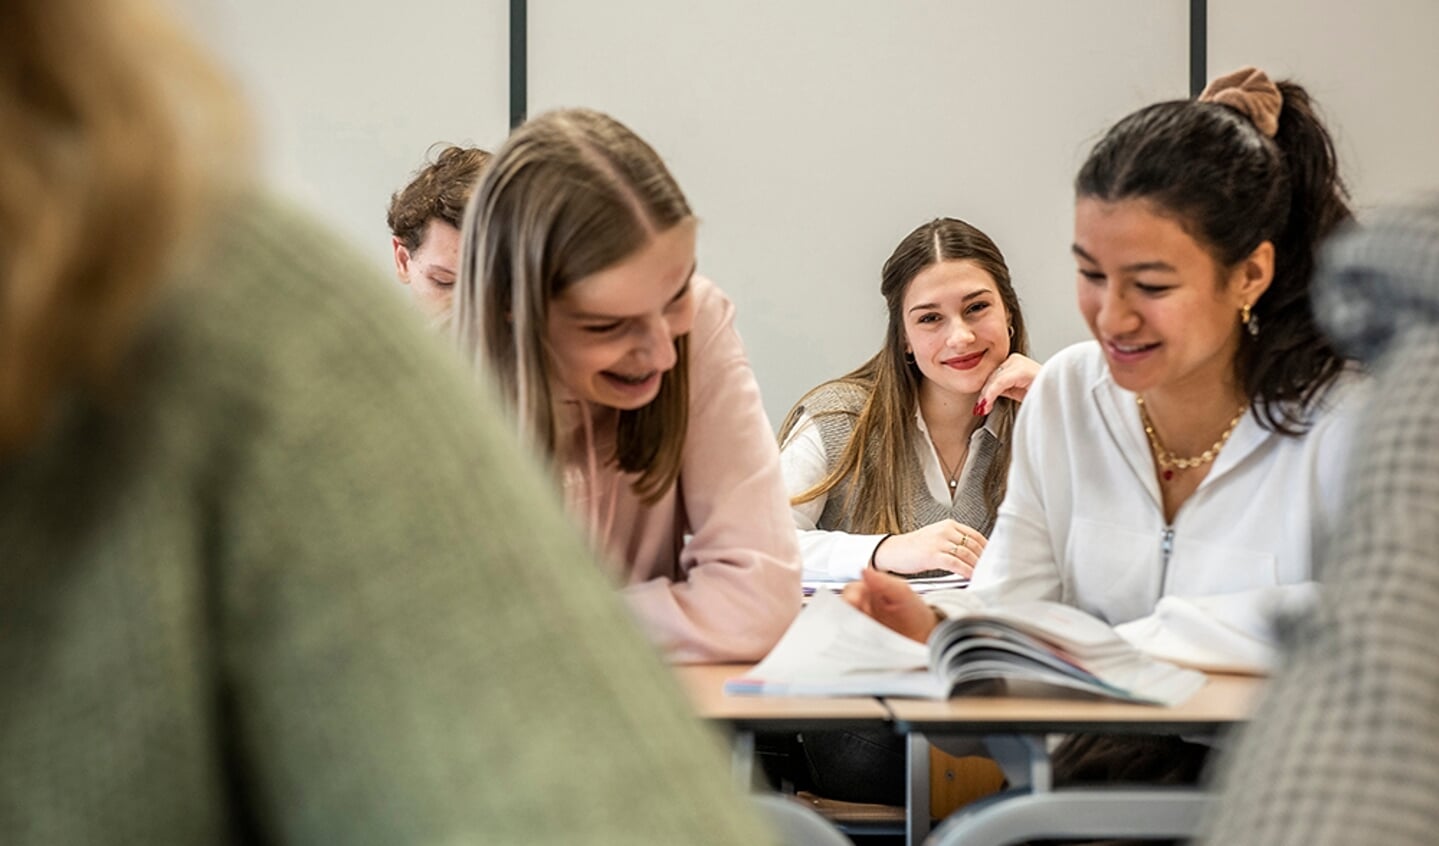 Gilde Opleidingen introduceert nieuwe opleidingsvariant Beroepshavo per schooljaar 2022-2023.